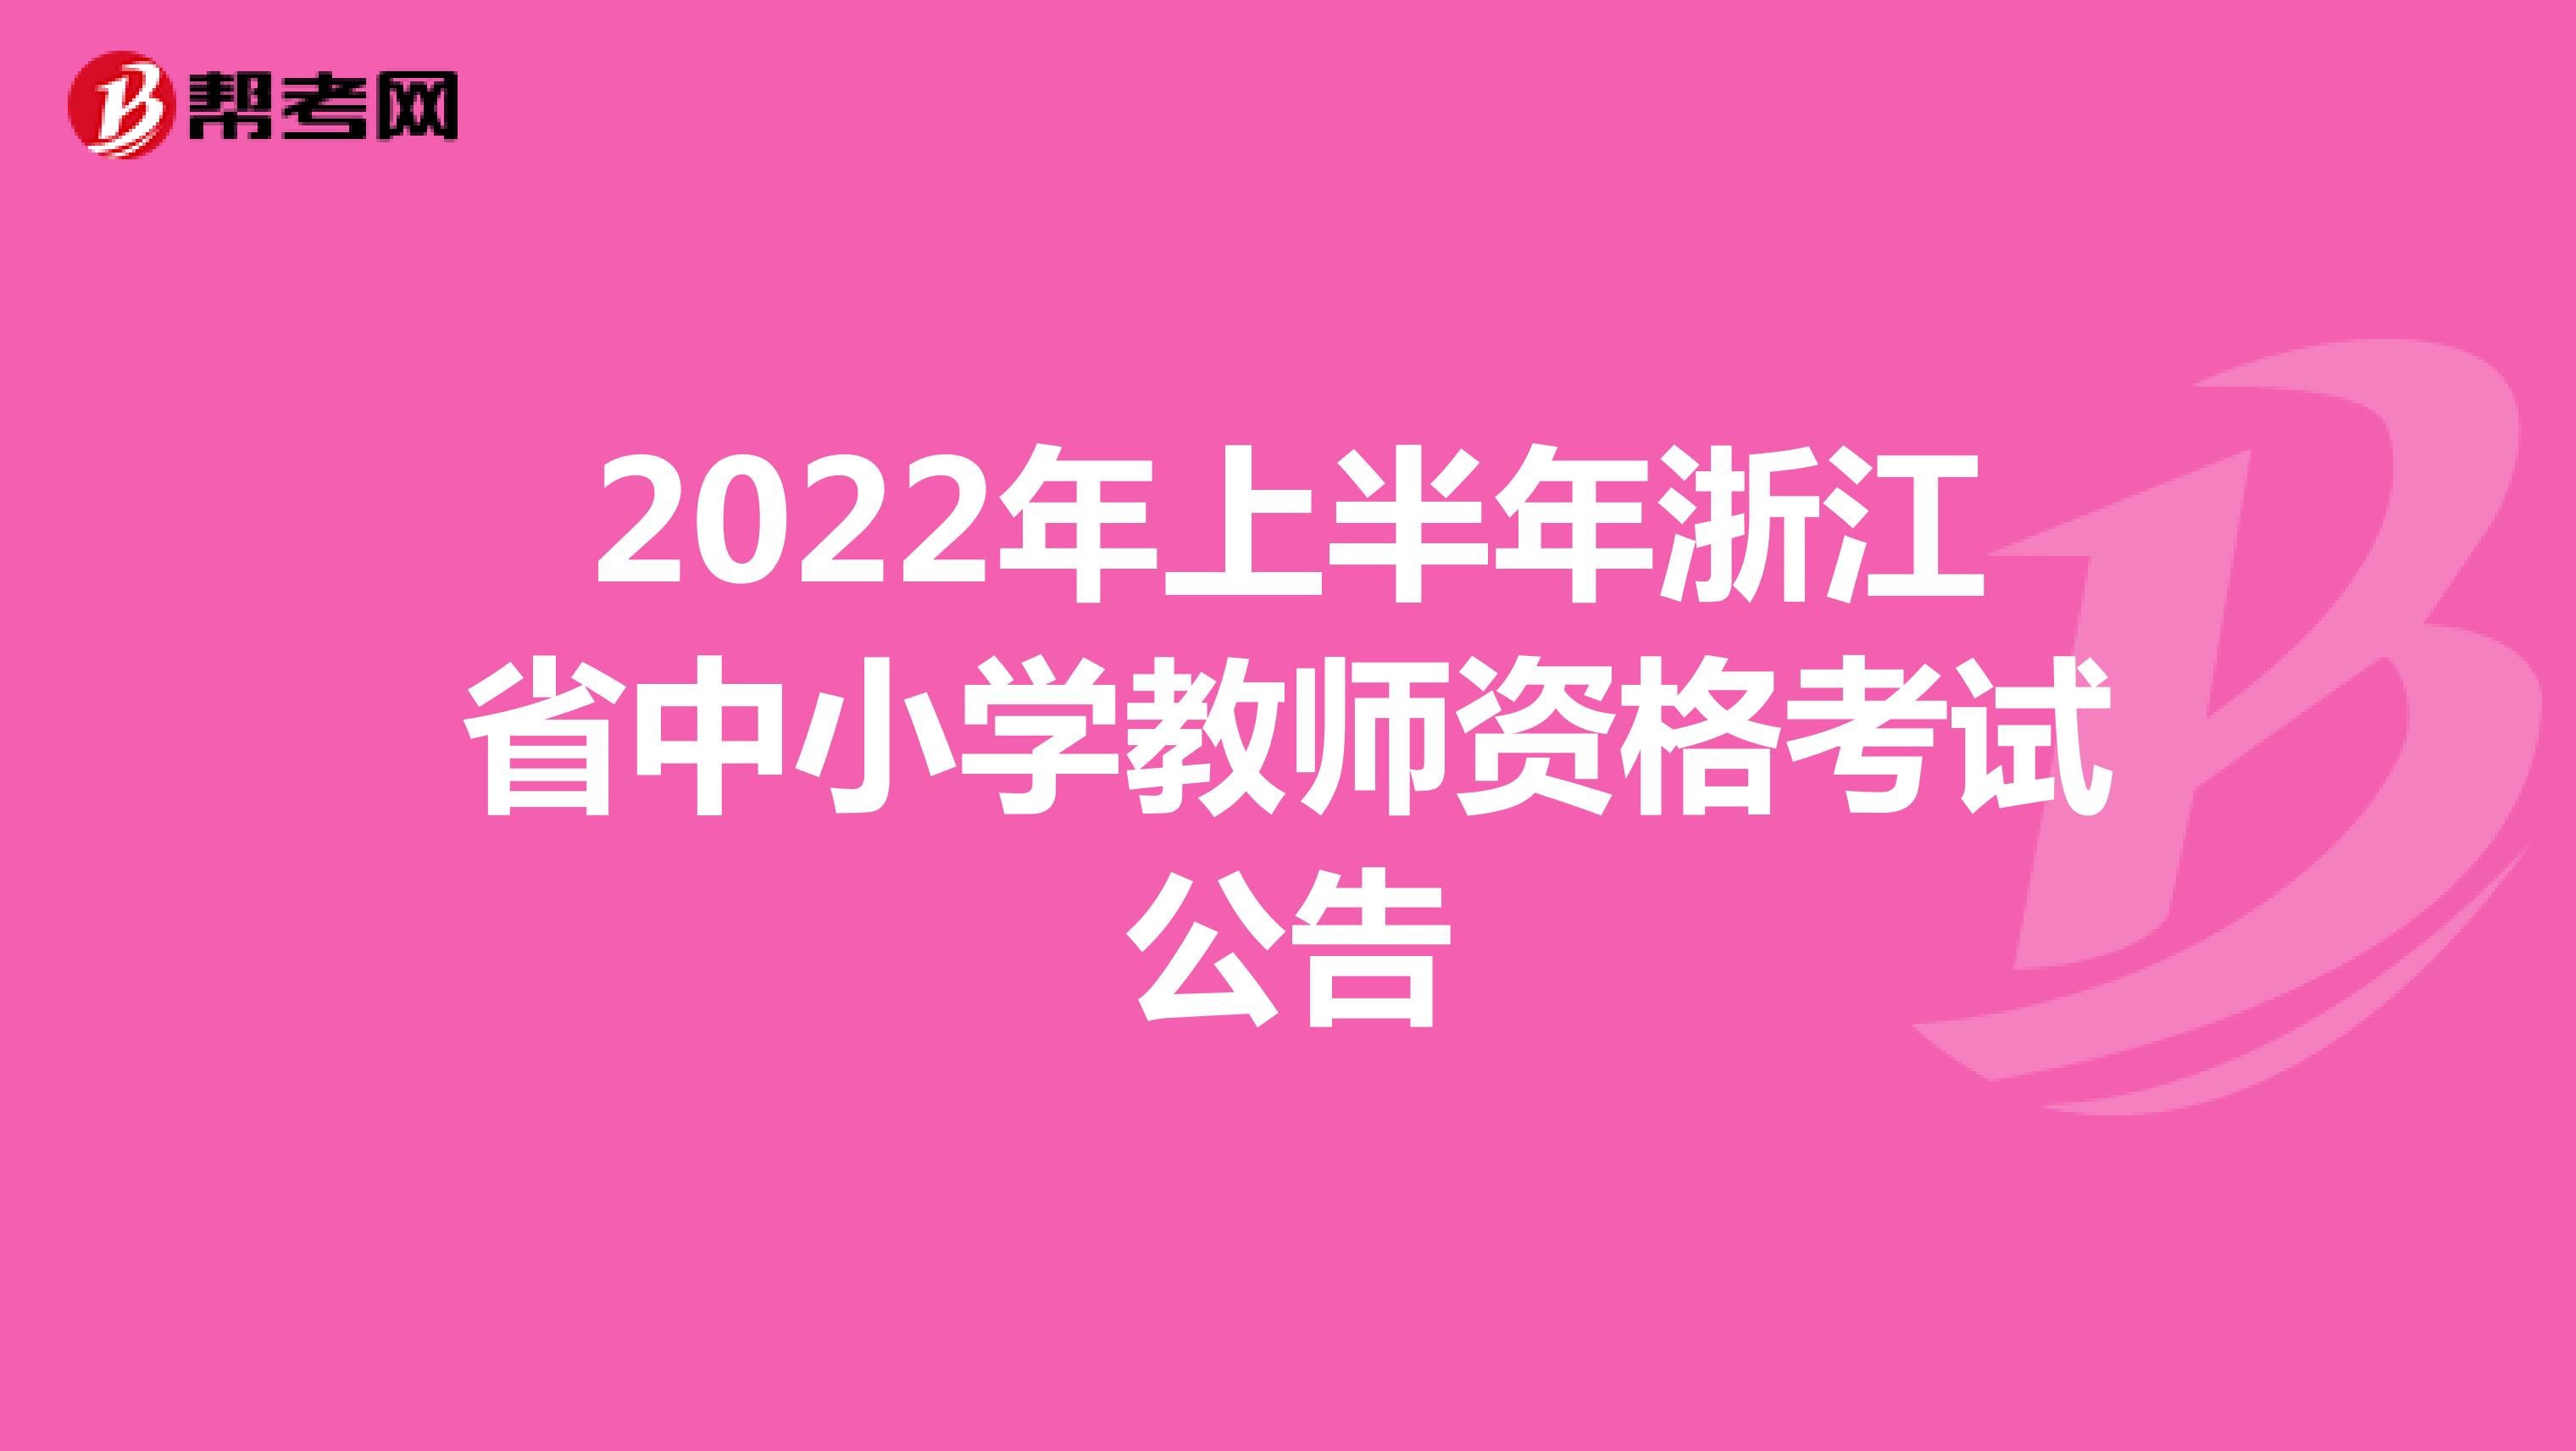 2022年上半年浙江省中小學教師資格考試公告